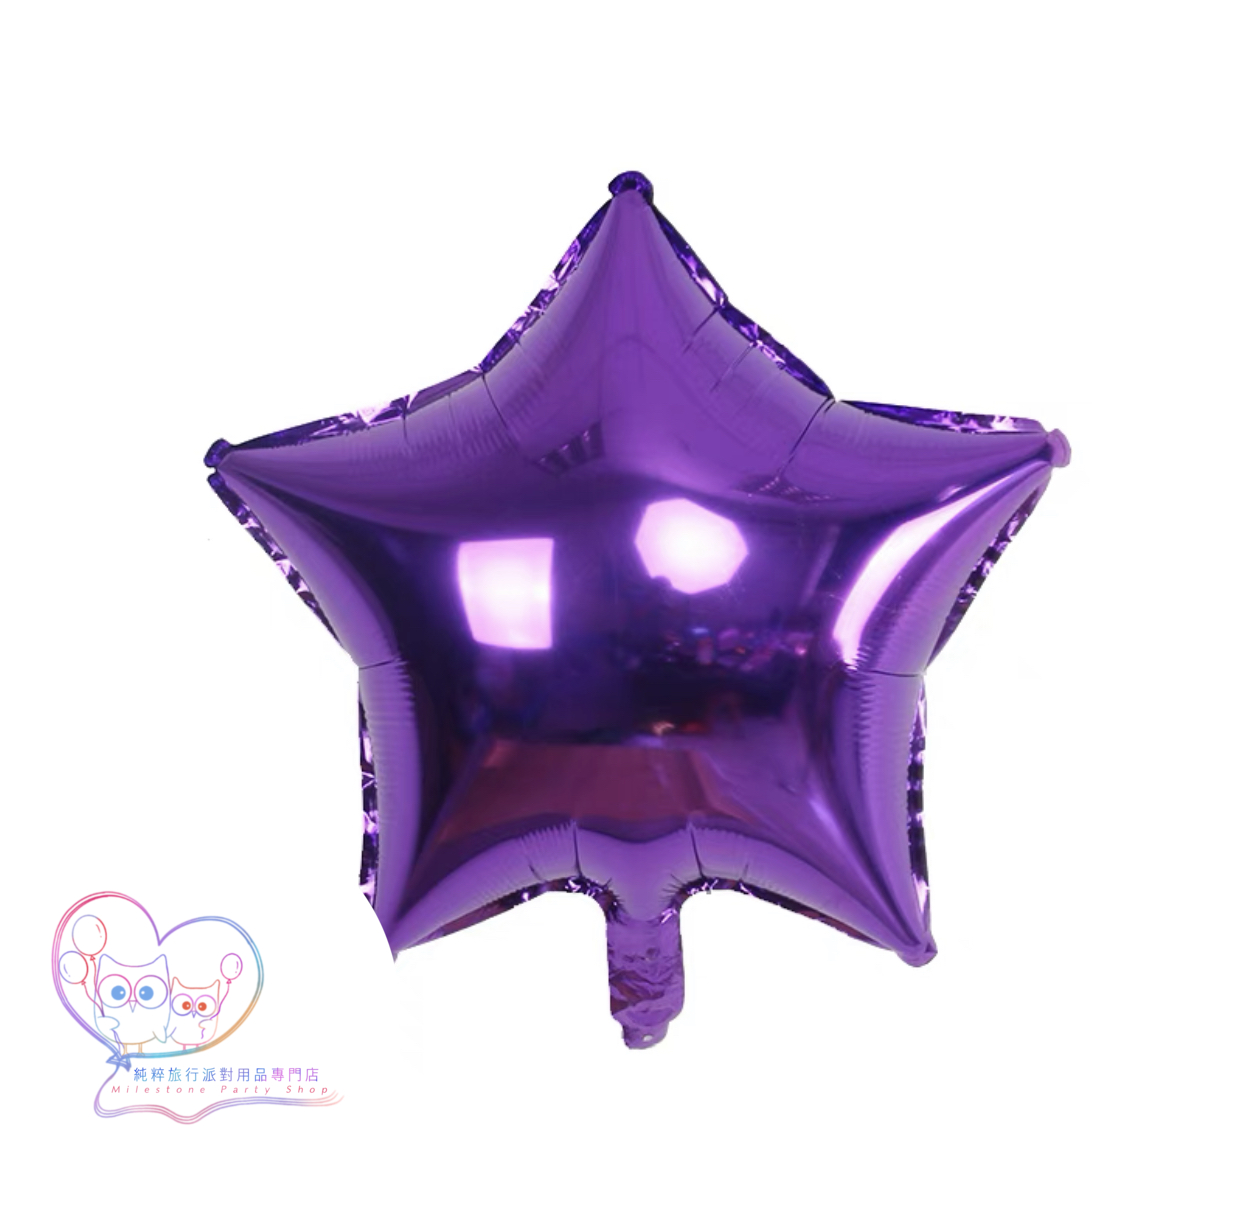 18吋星星鋁膜氣球 (紫色) 18S11